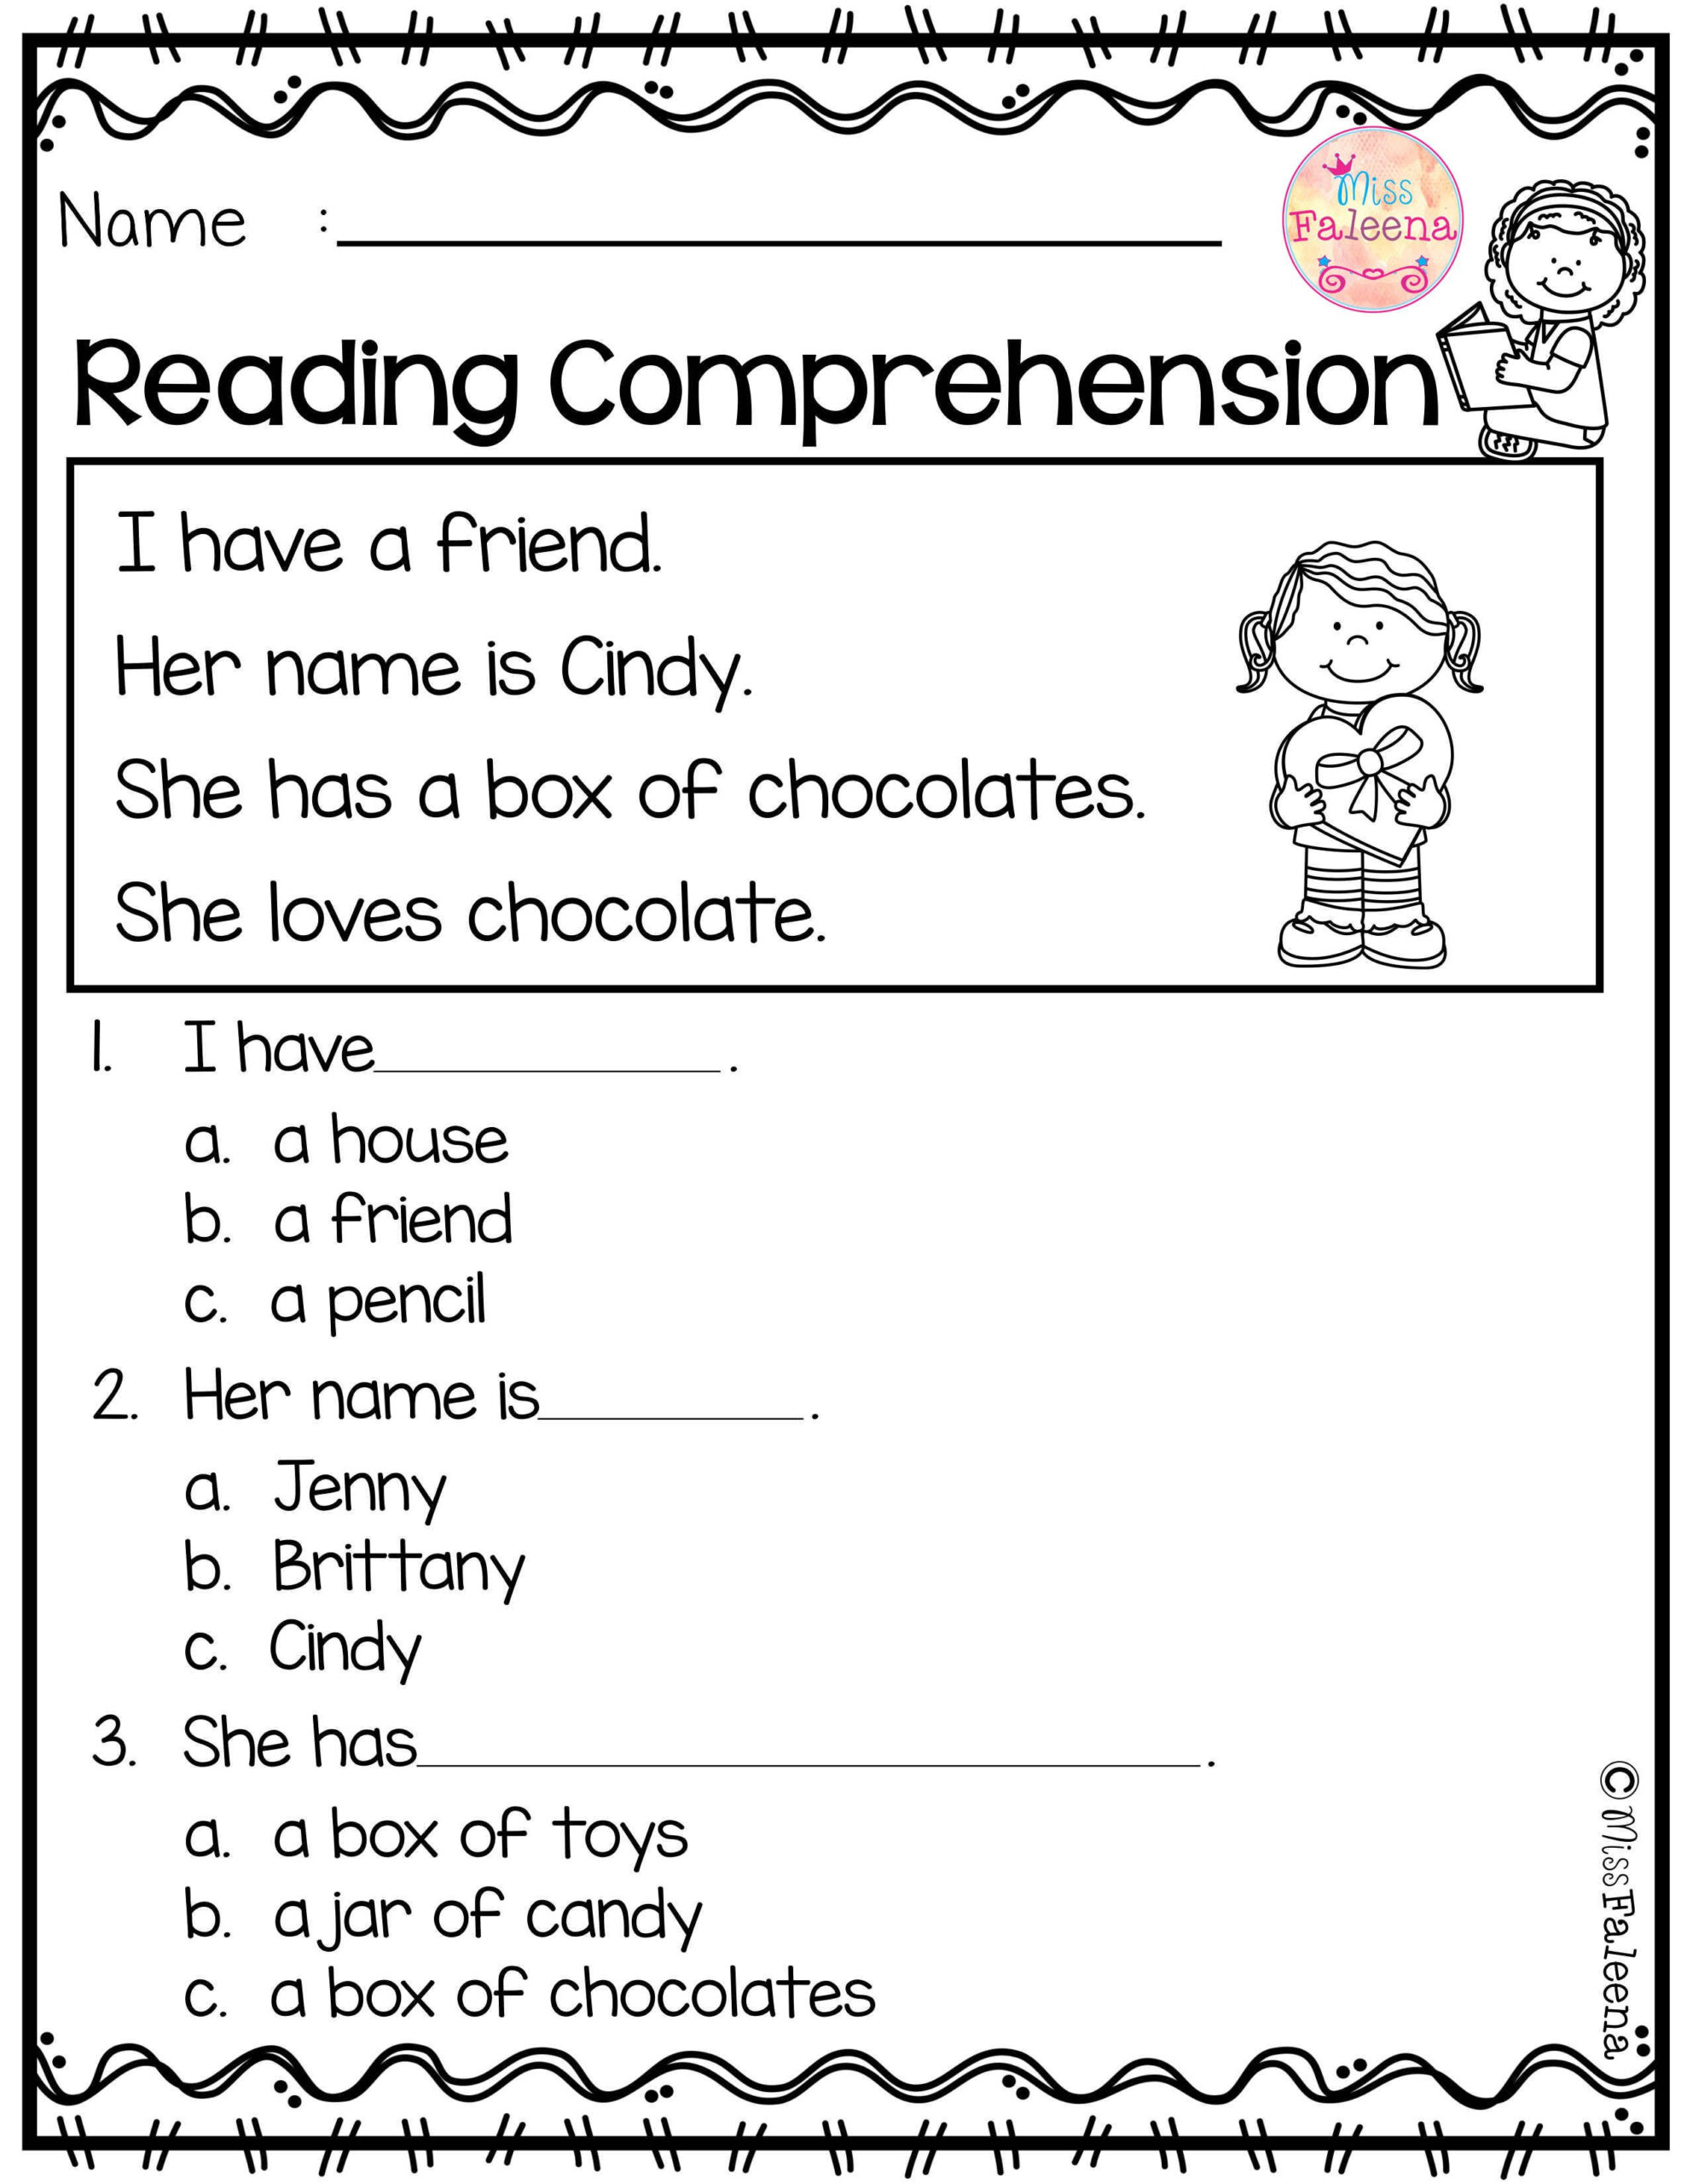 kindergarten-reading-worksheets-printable-reading-comprehension